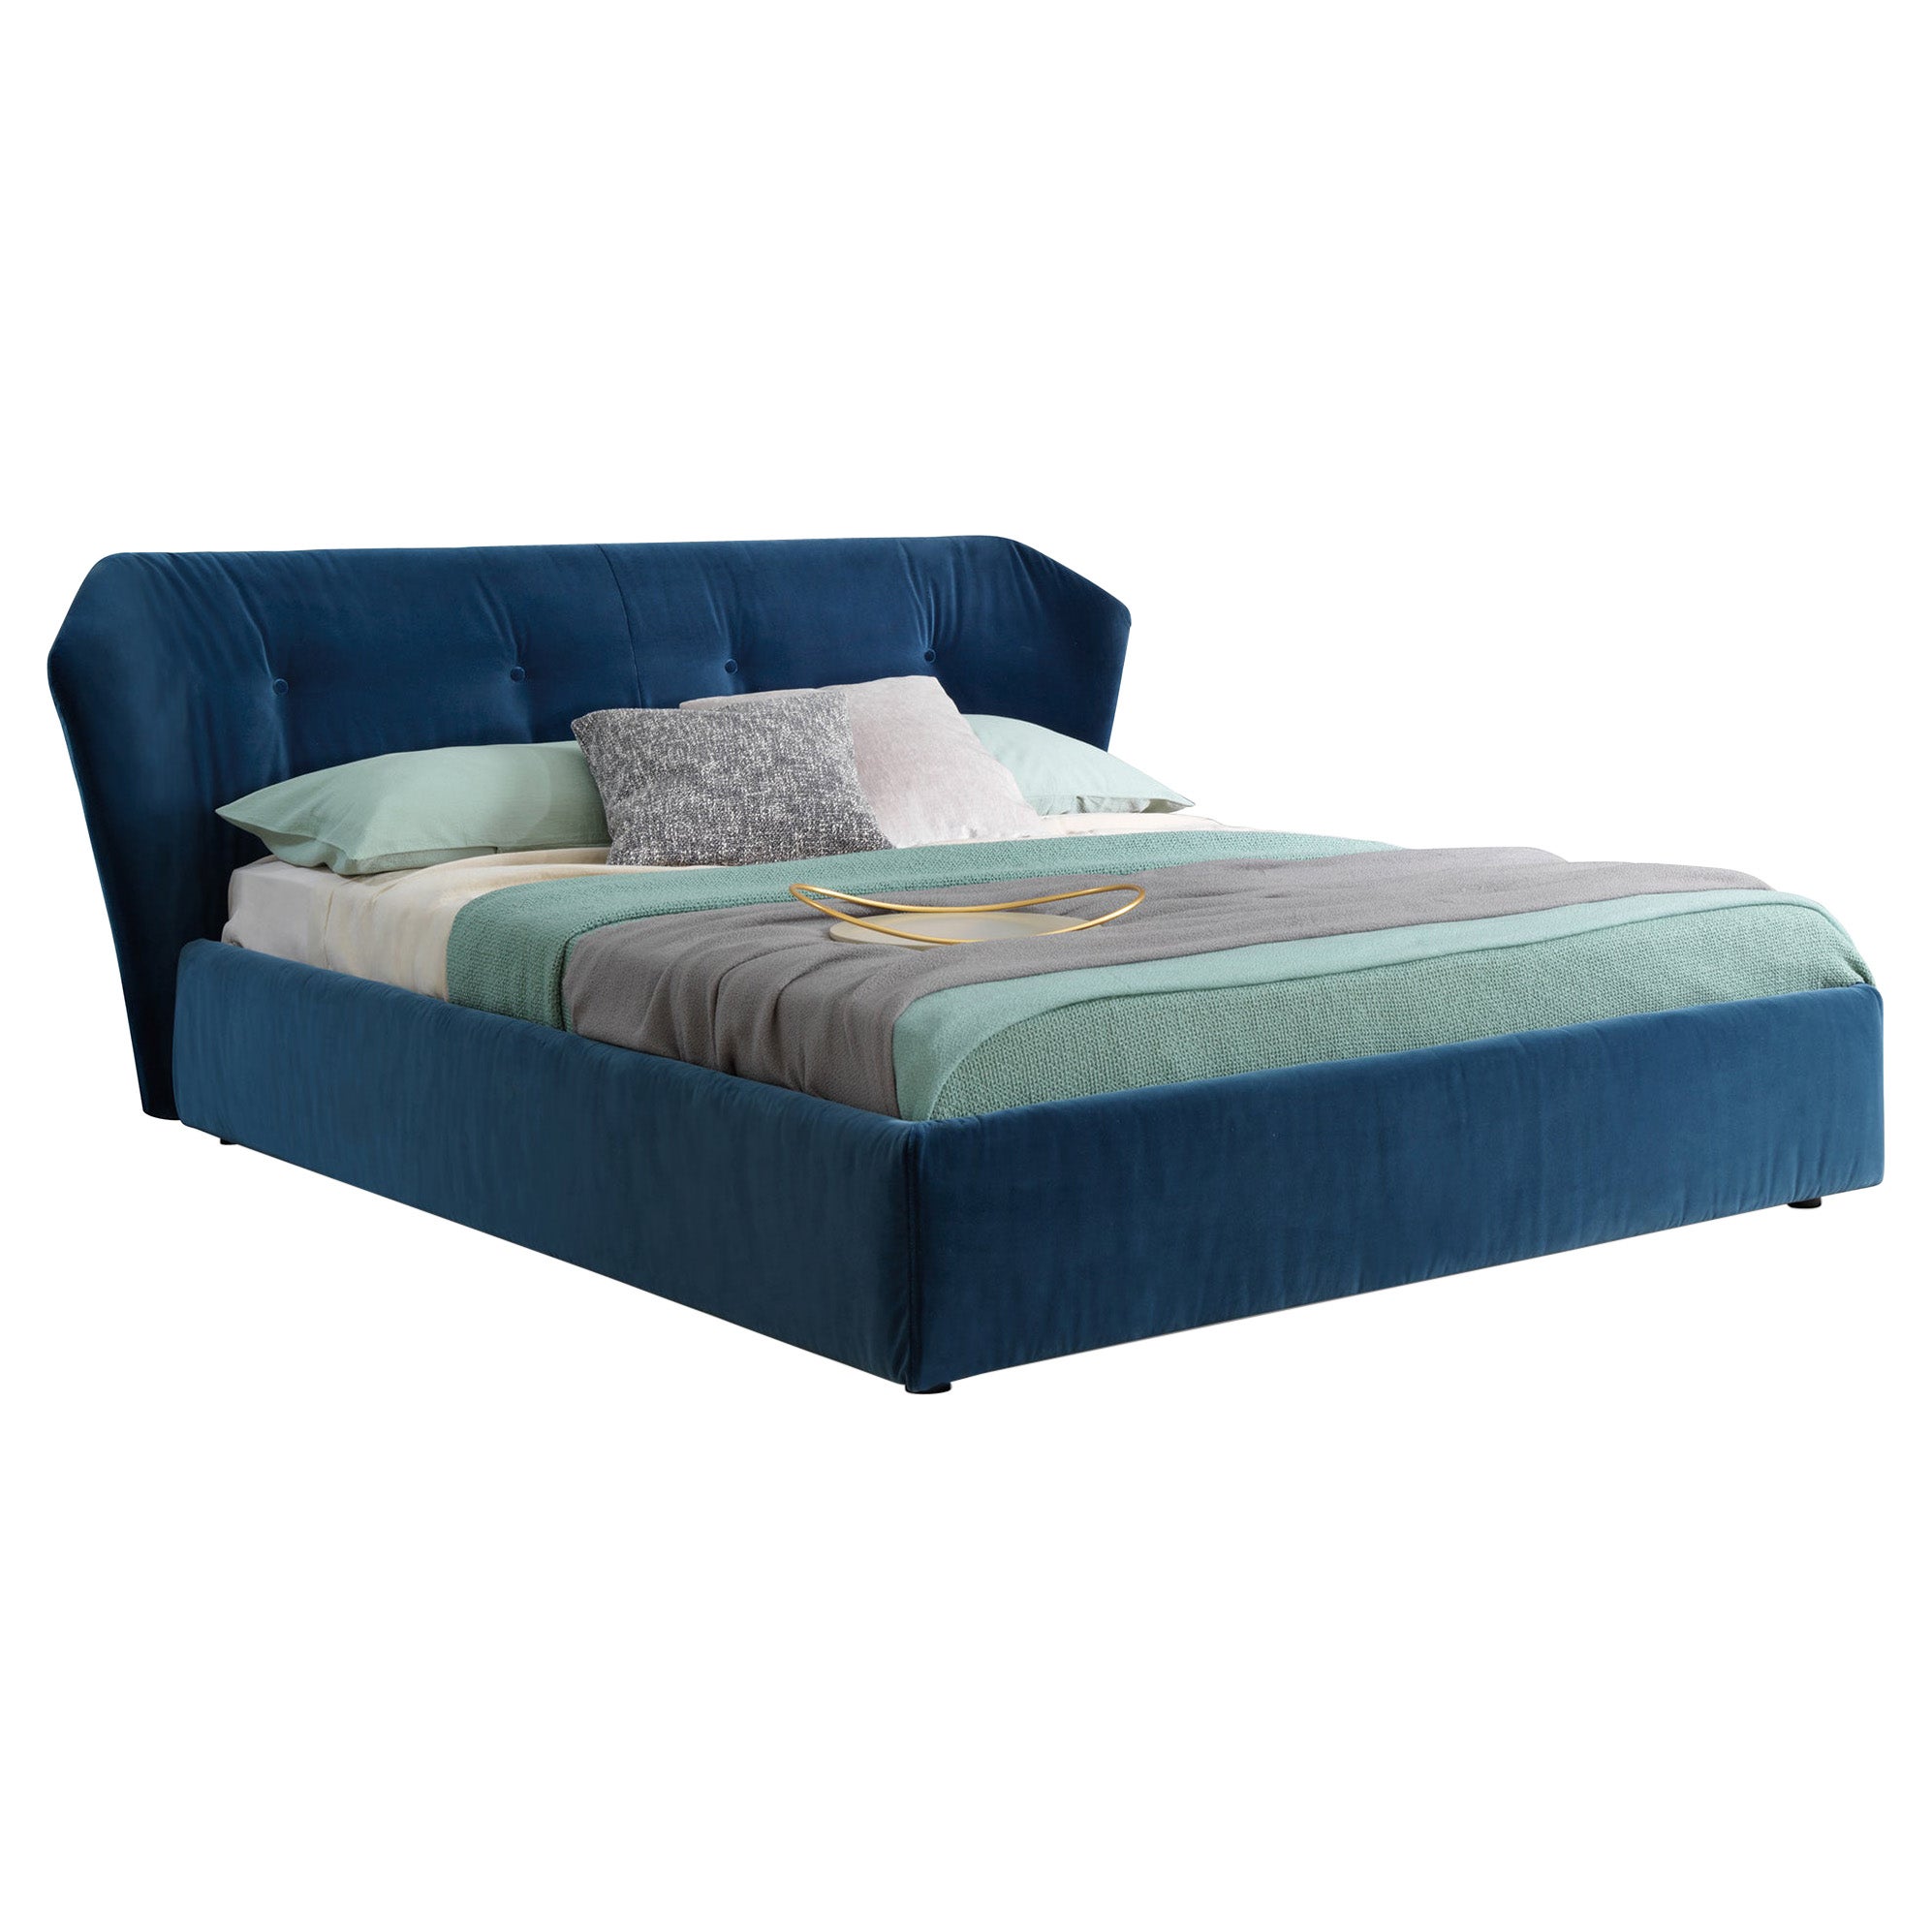 New York Box Bed Queen Size in Vegas Velvet Dark Blue Upholstery, Sergio Bicego